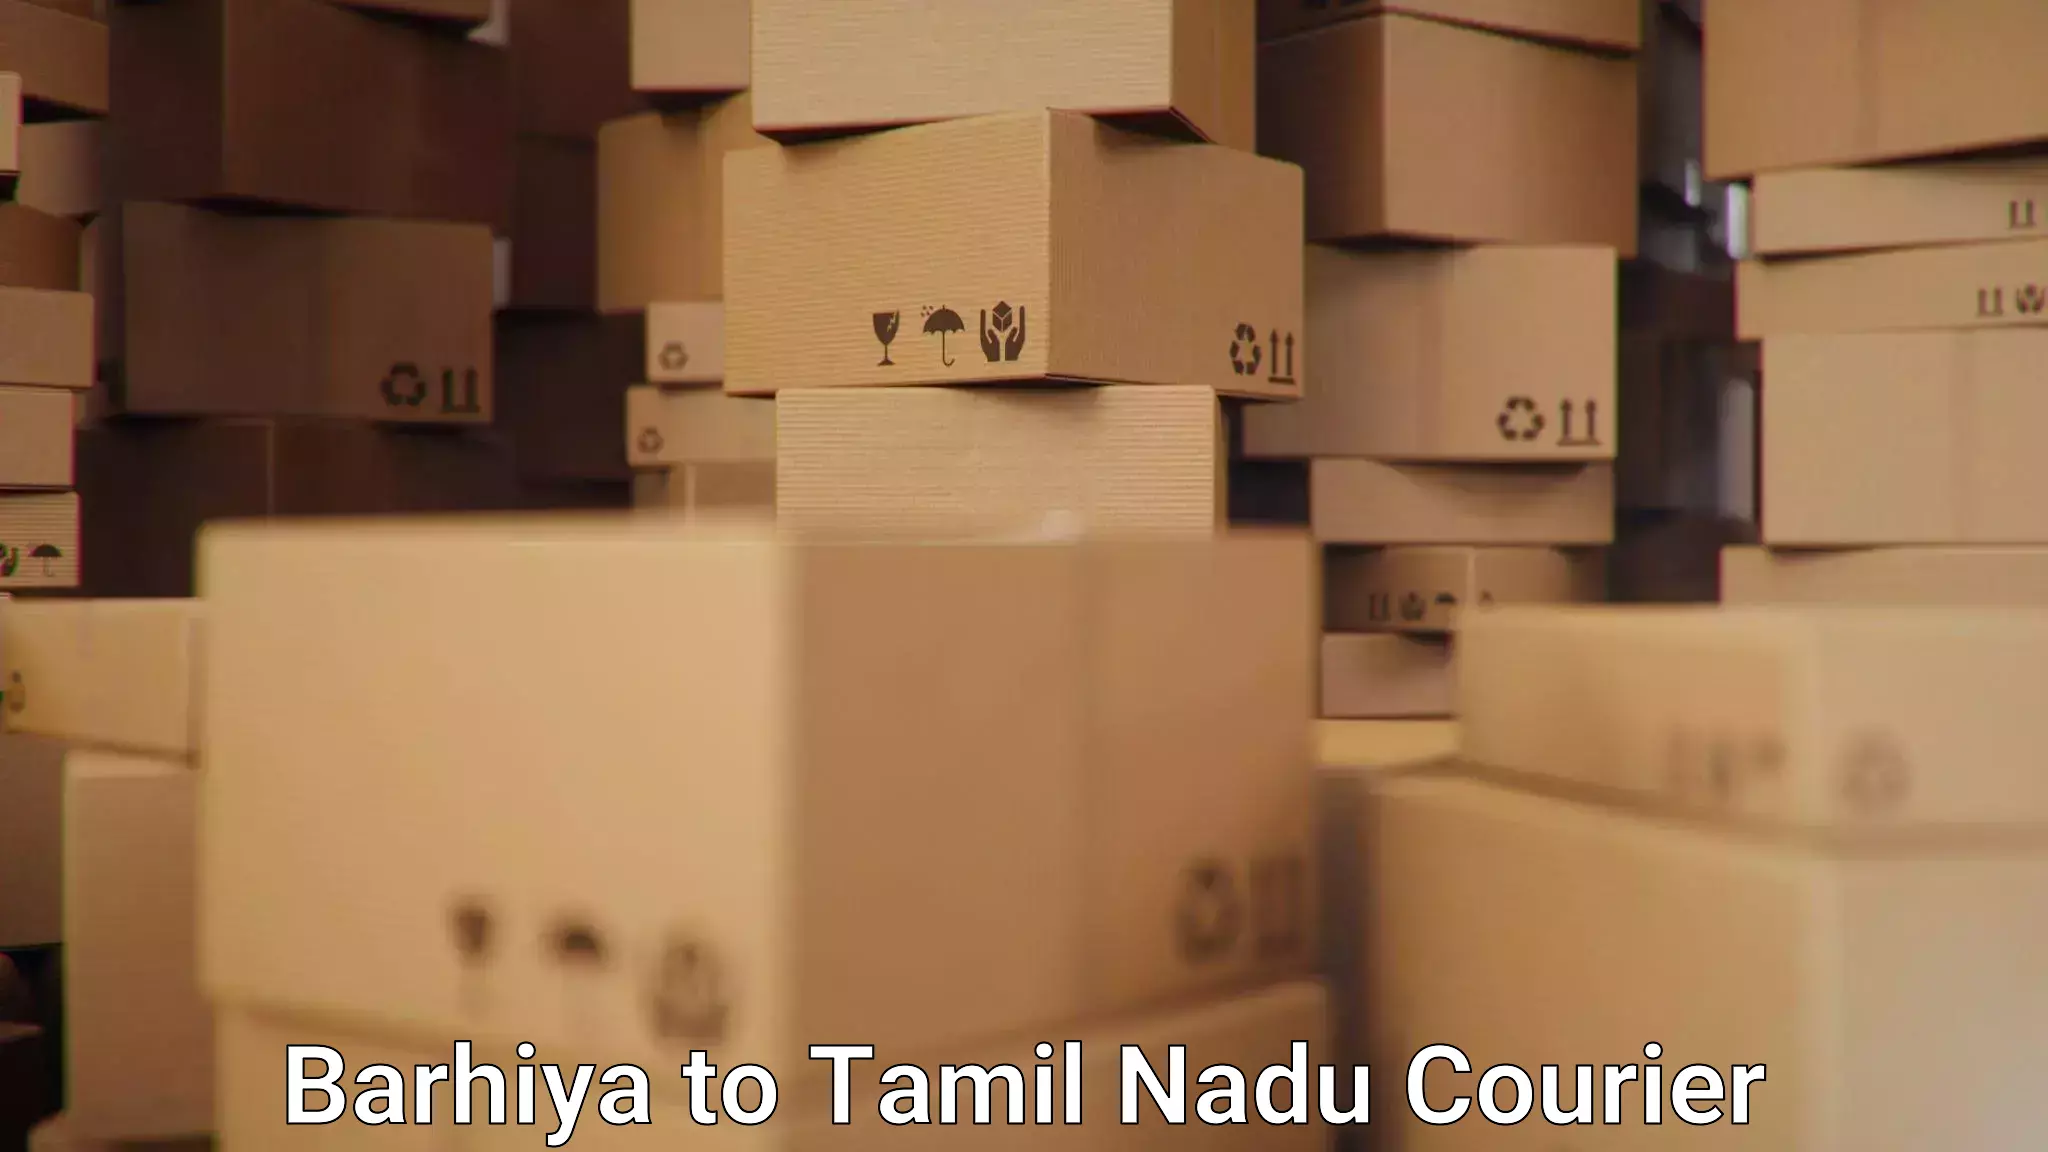 Package consolidation Barhiya to Tiruturaipundi